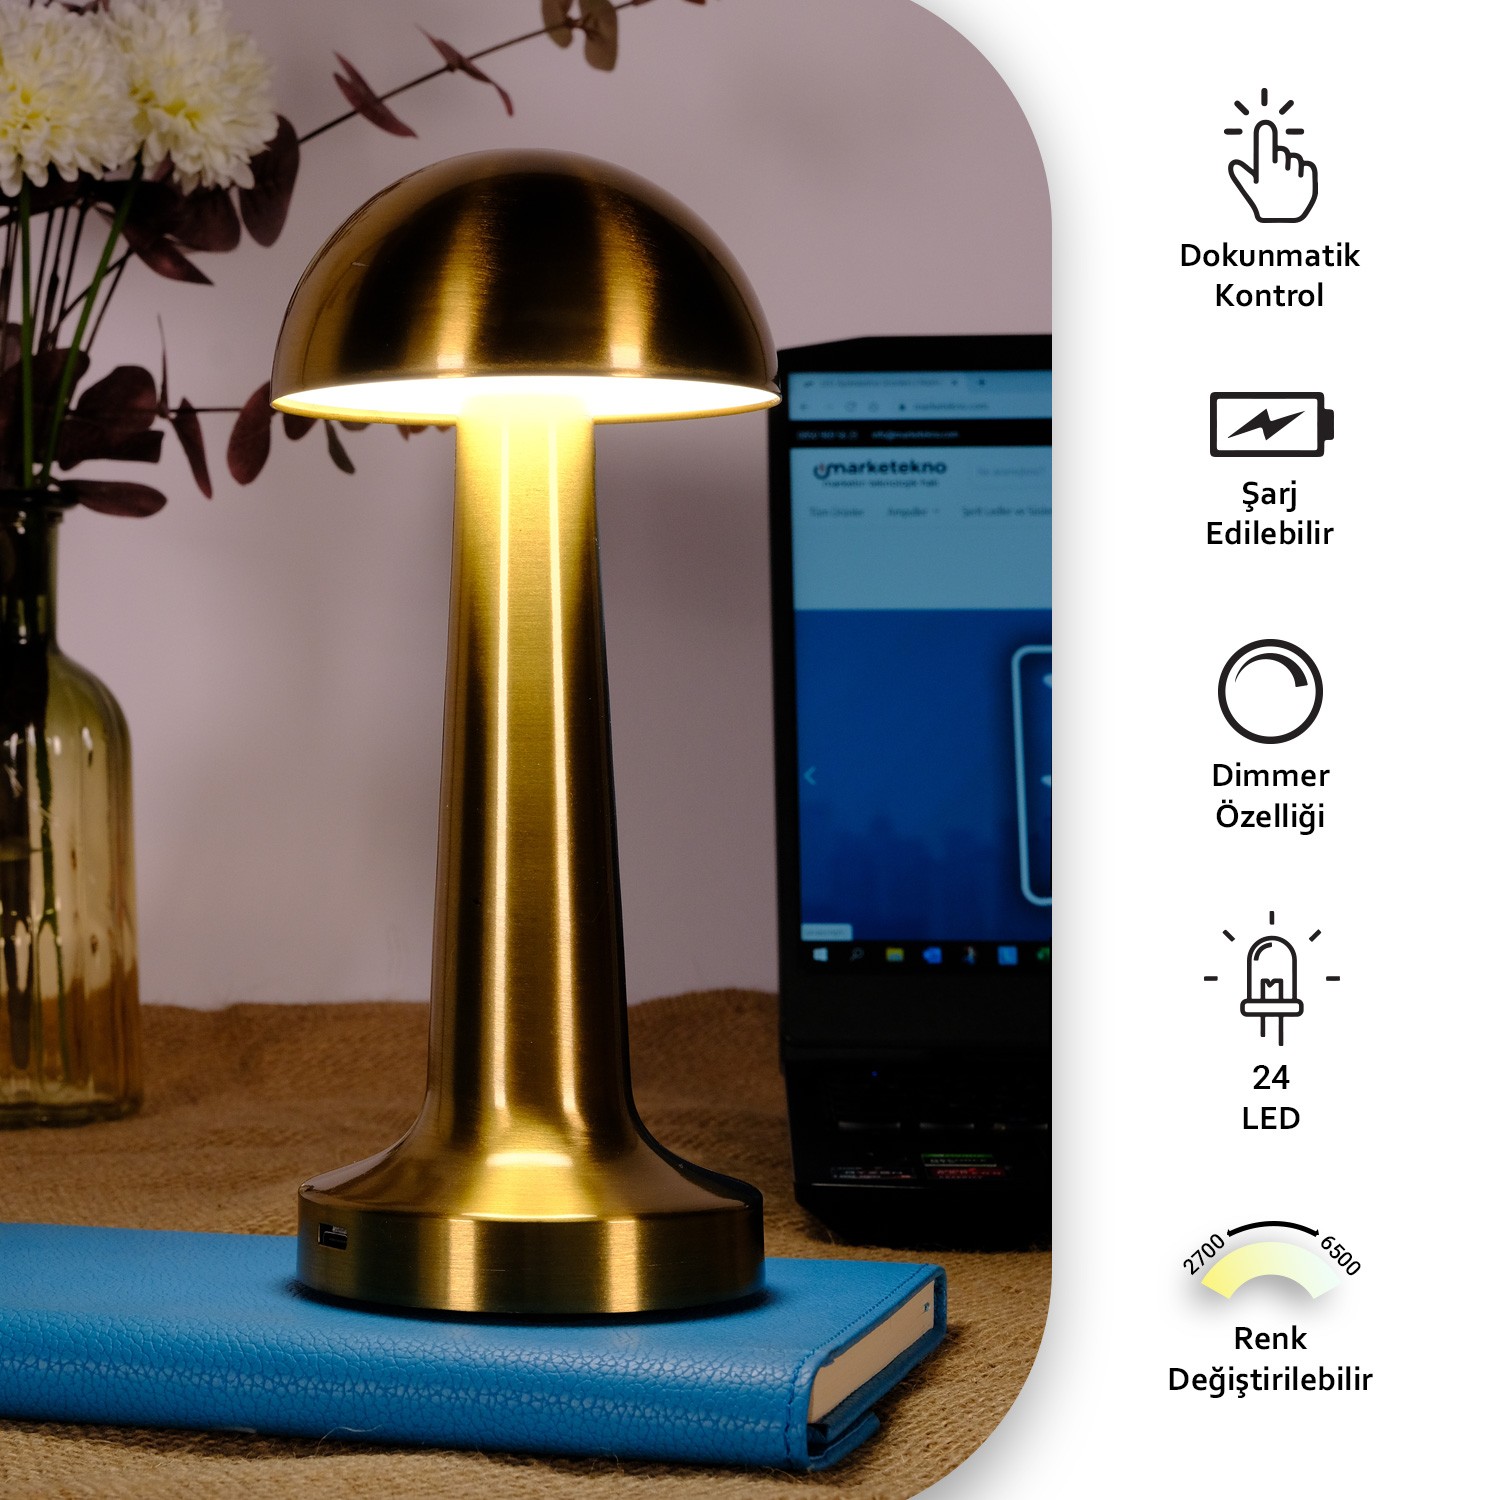 ACK Şarjlı Dokunmatik LED Masa Lambası, Renk Değiştirilebilir, Gold Renk Metal Gövde